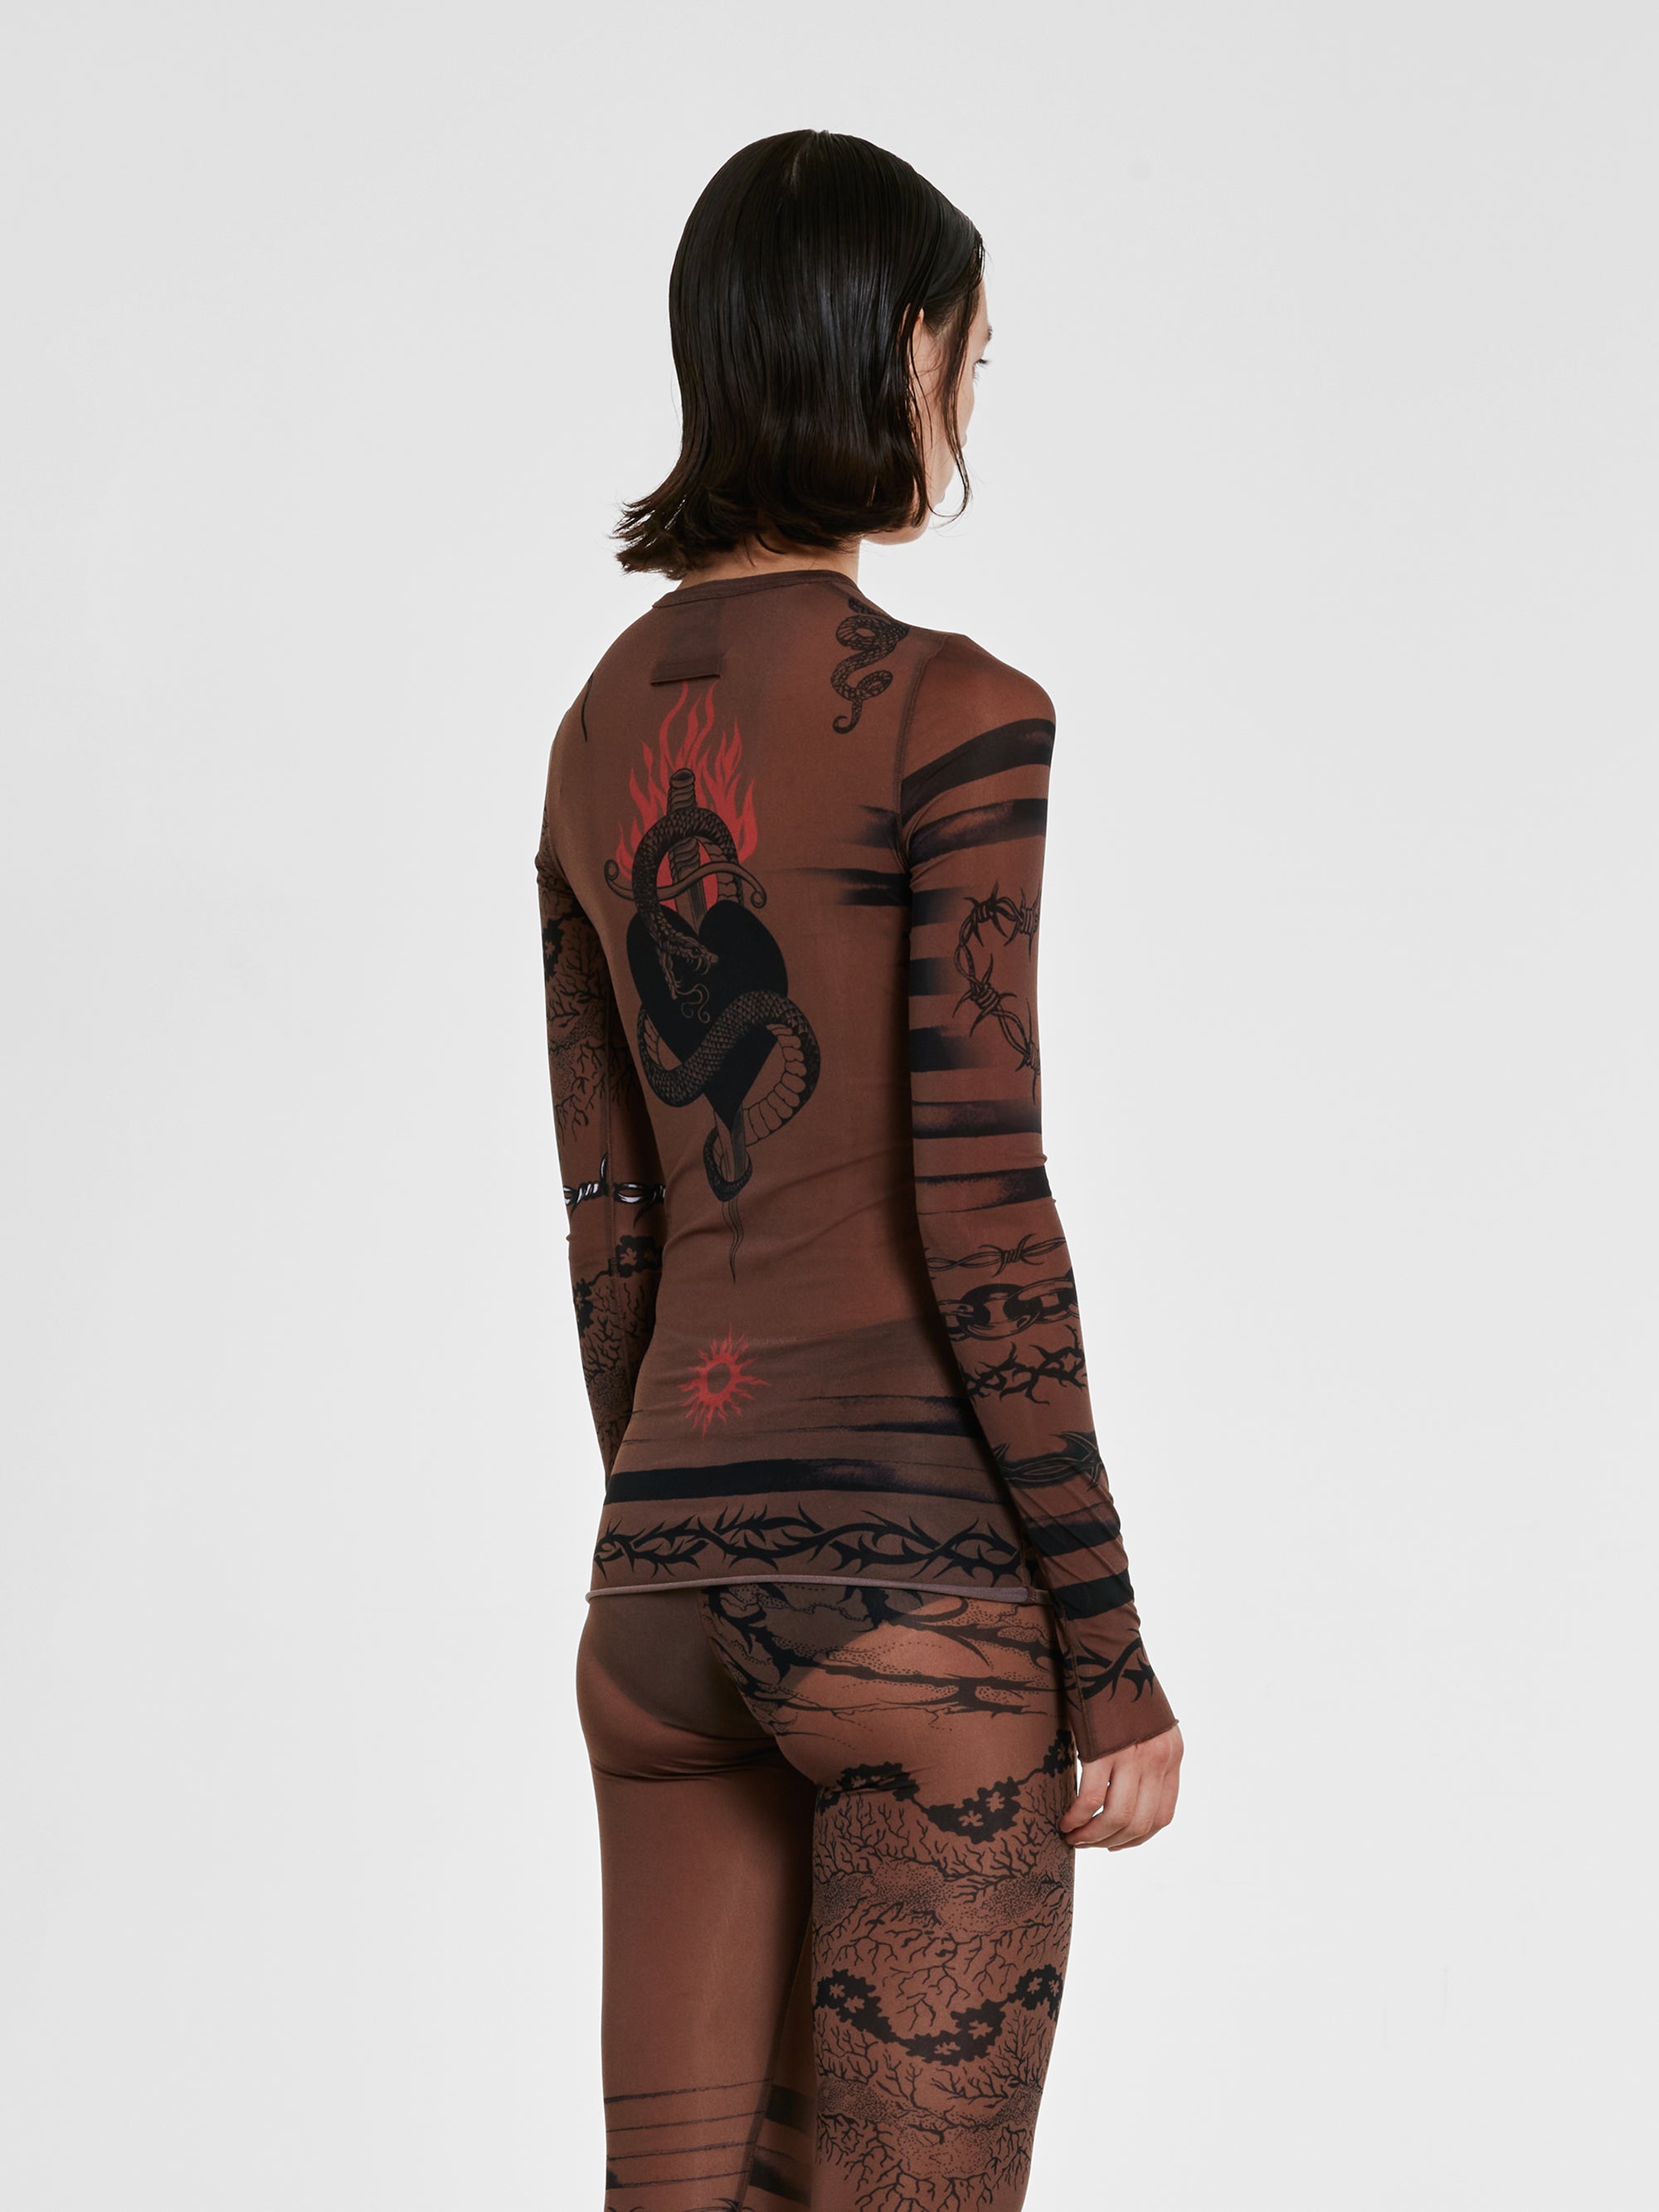 Jean Paul Gaultier - KNWLS Women’s Trompe L’Oeil Tattoo Long Sleeve Top - (Ebony/Grey/Black) view 4